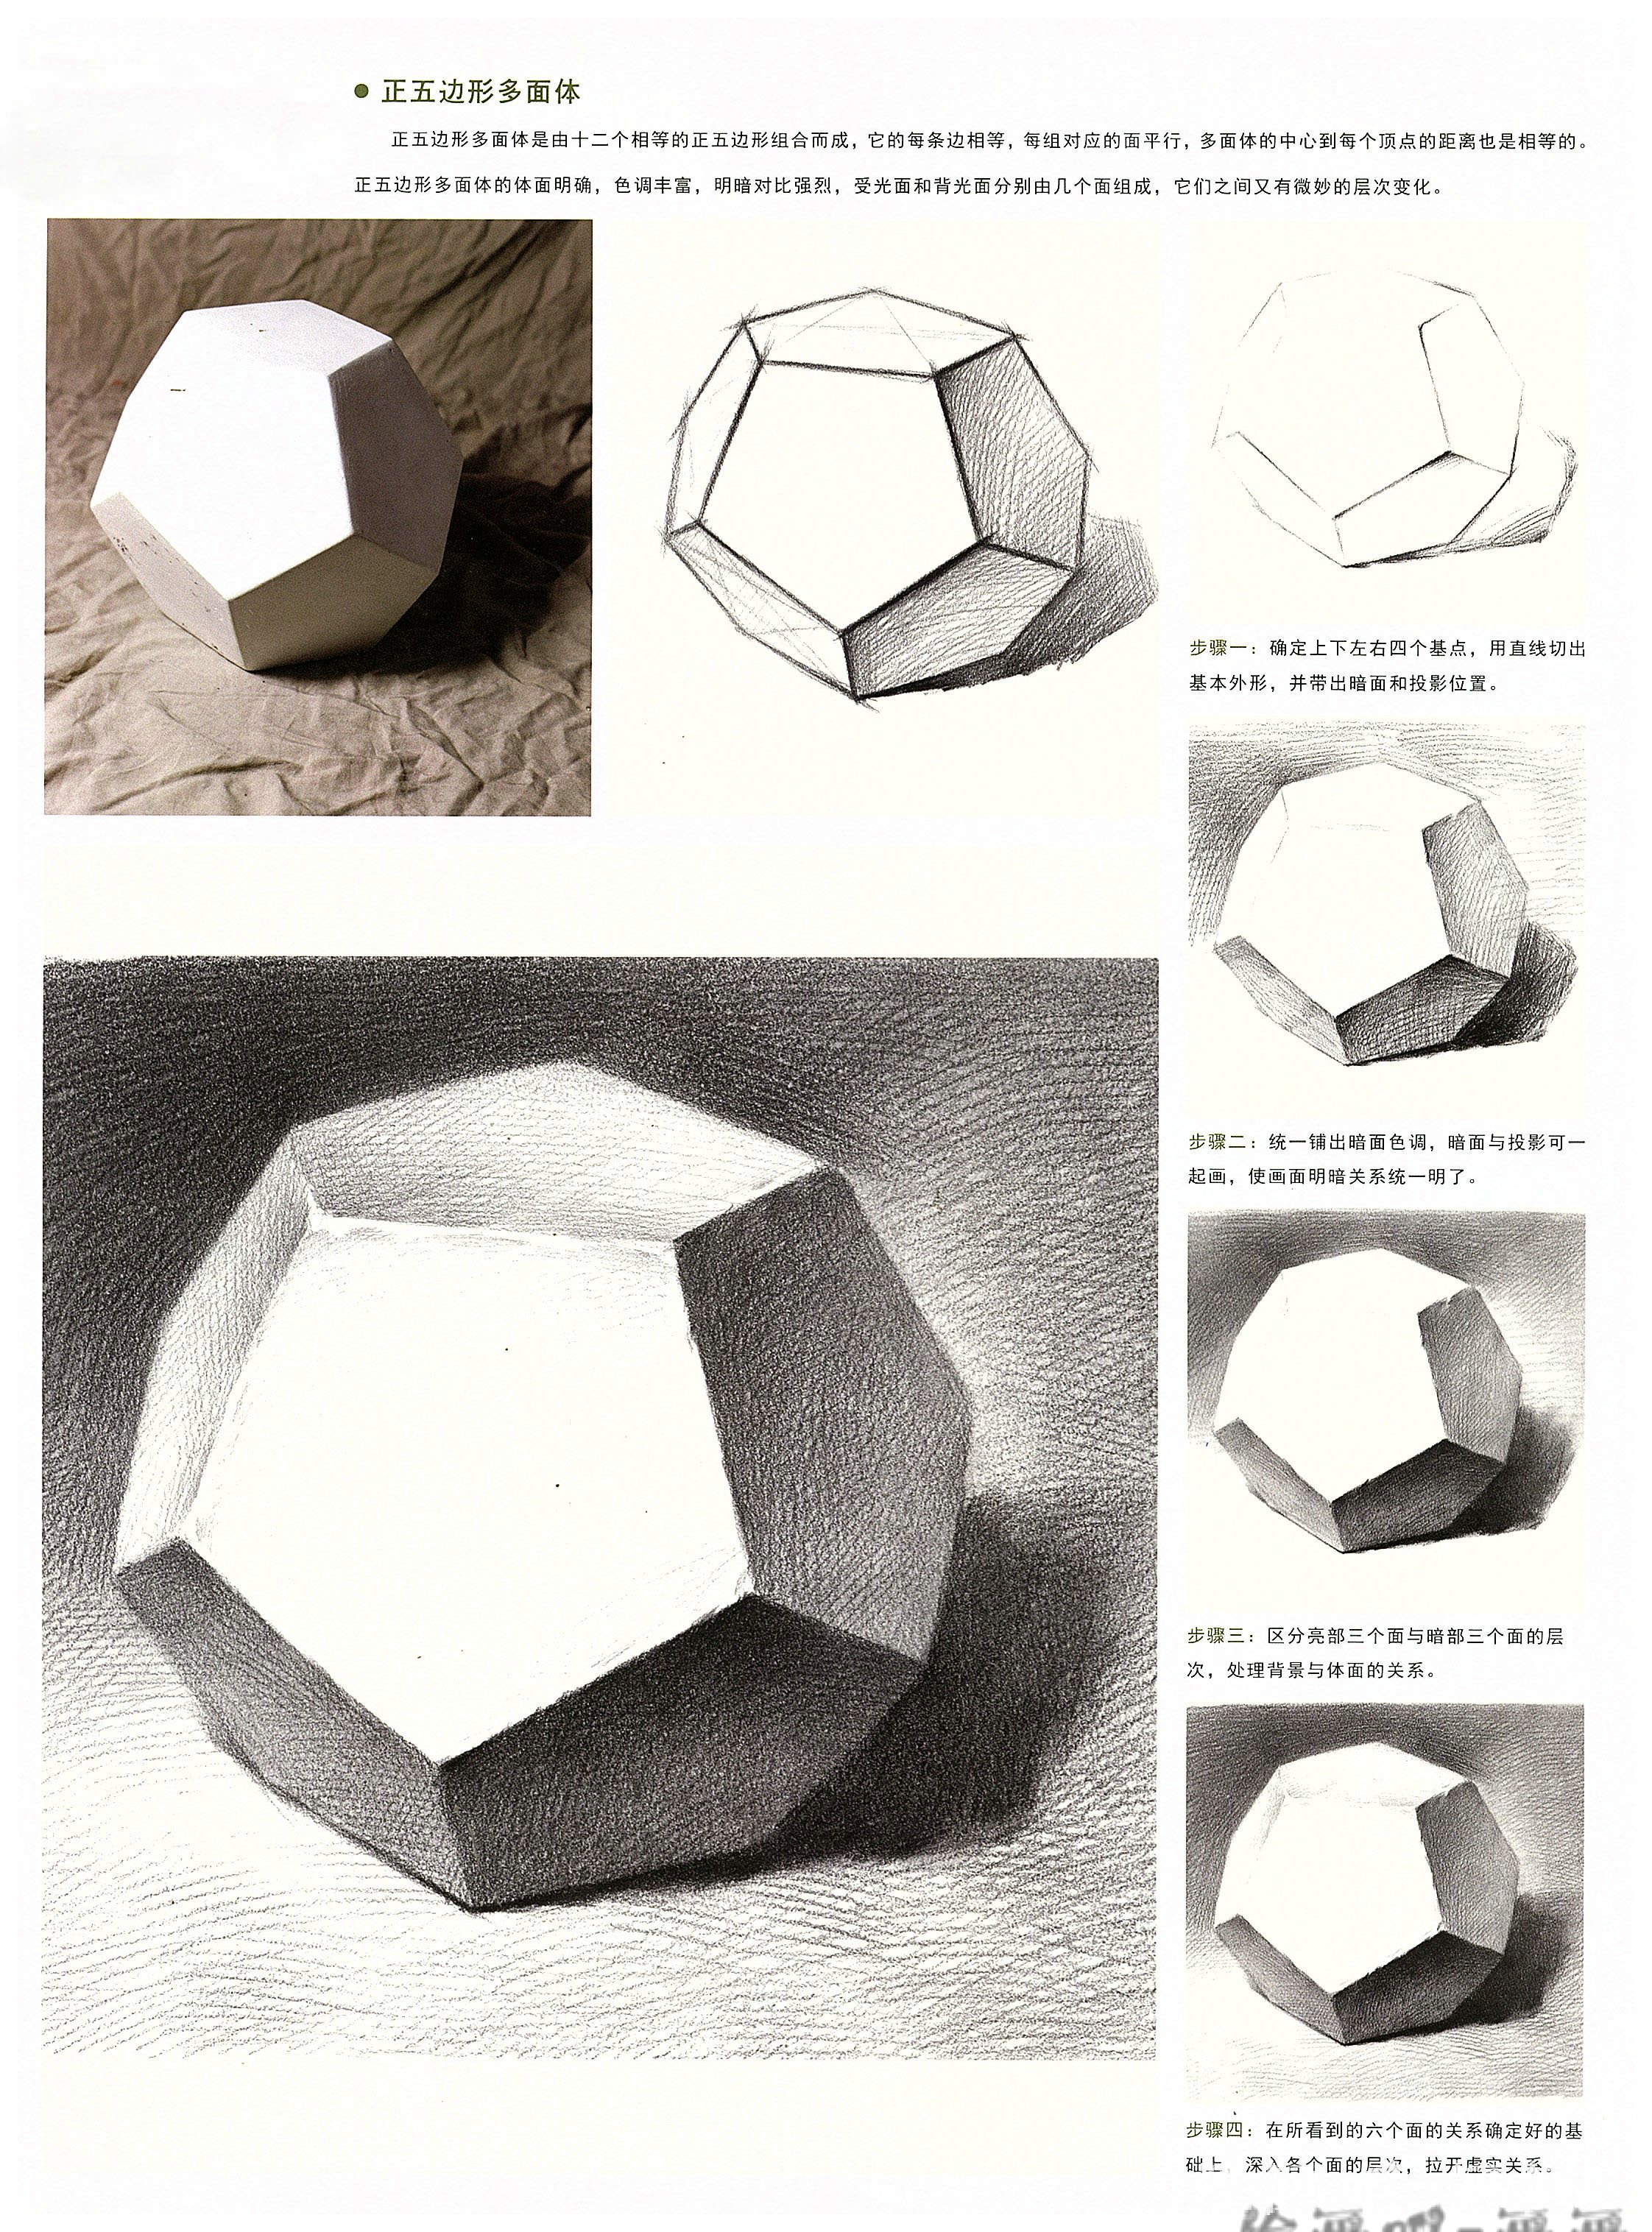 十二面体 正五边形多面体画法分析 特点讲解